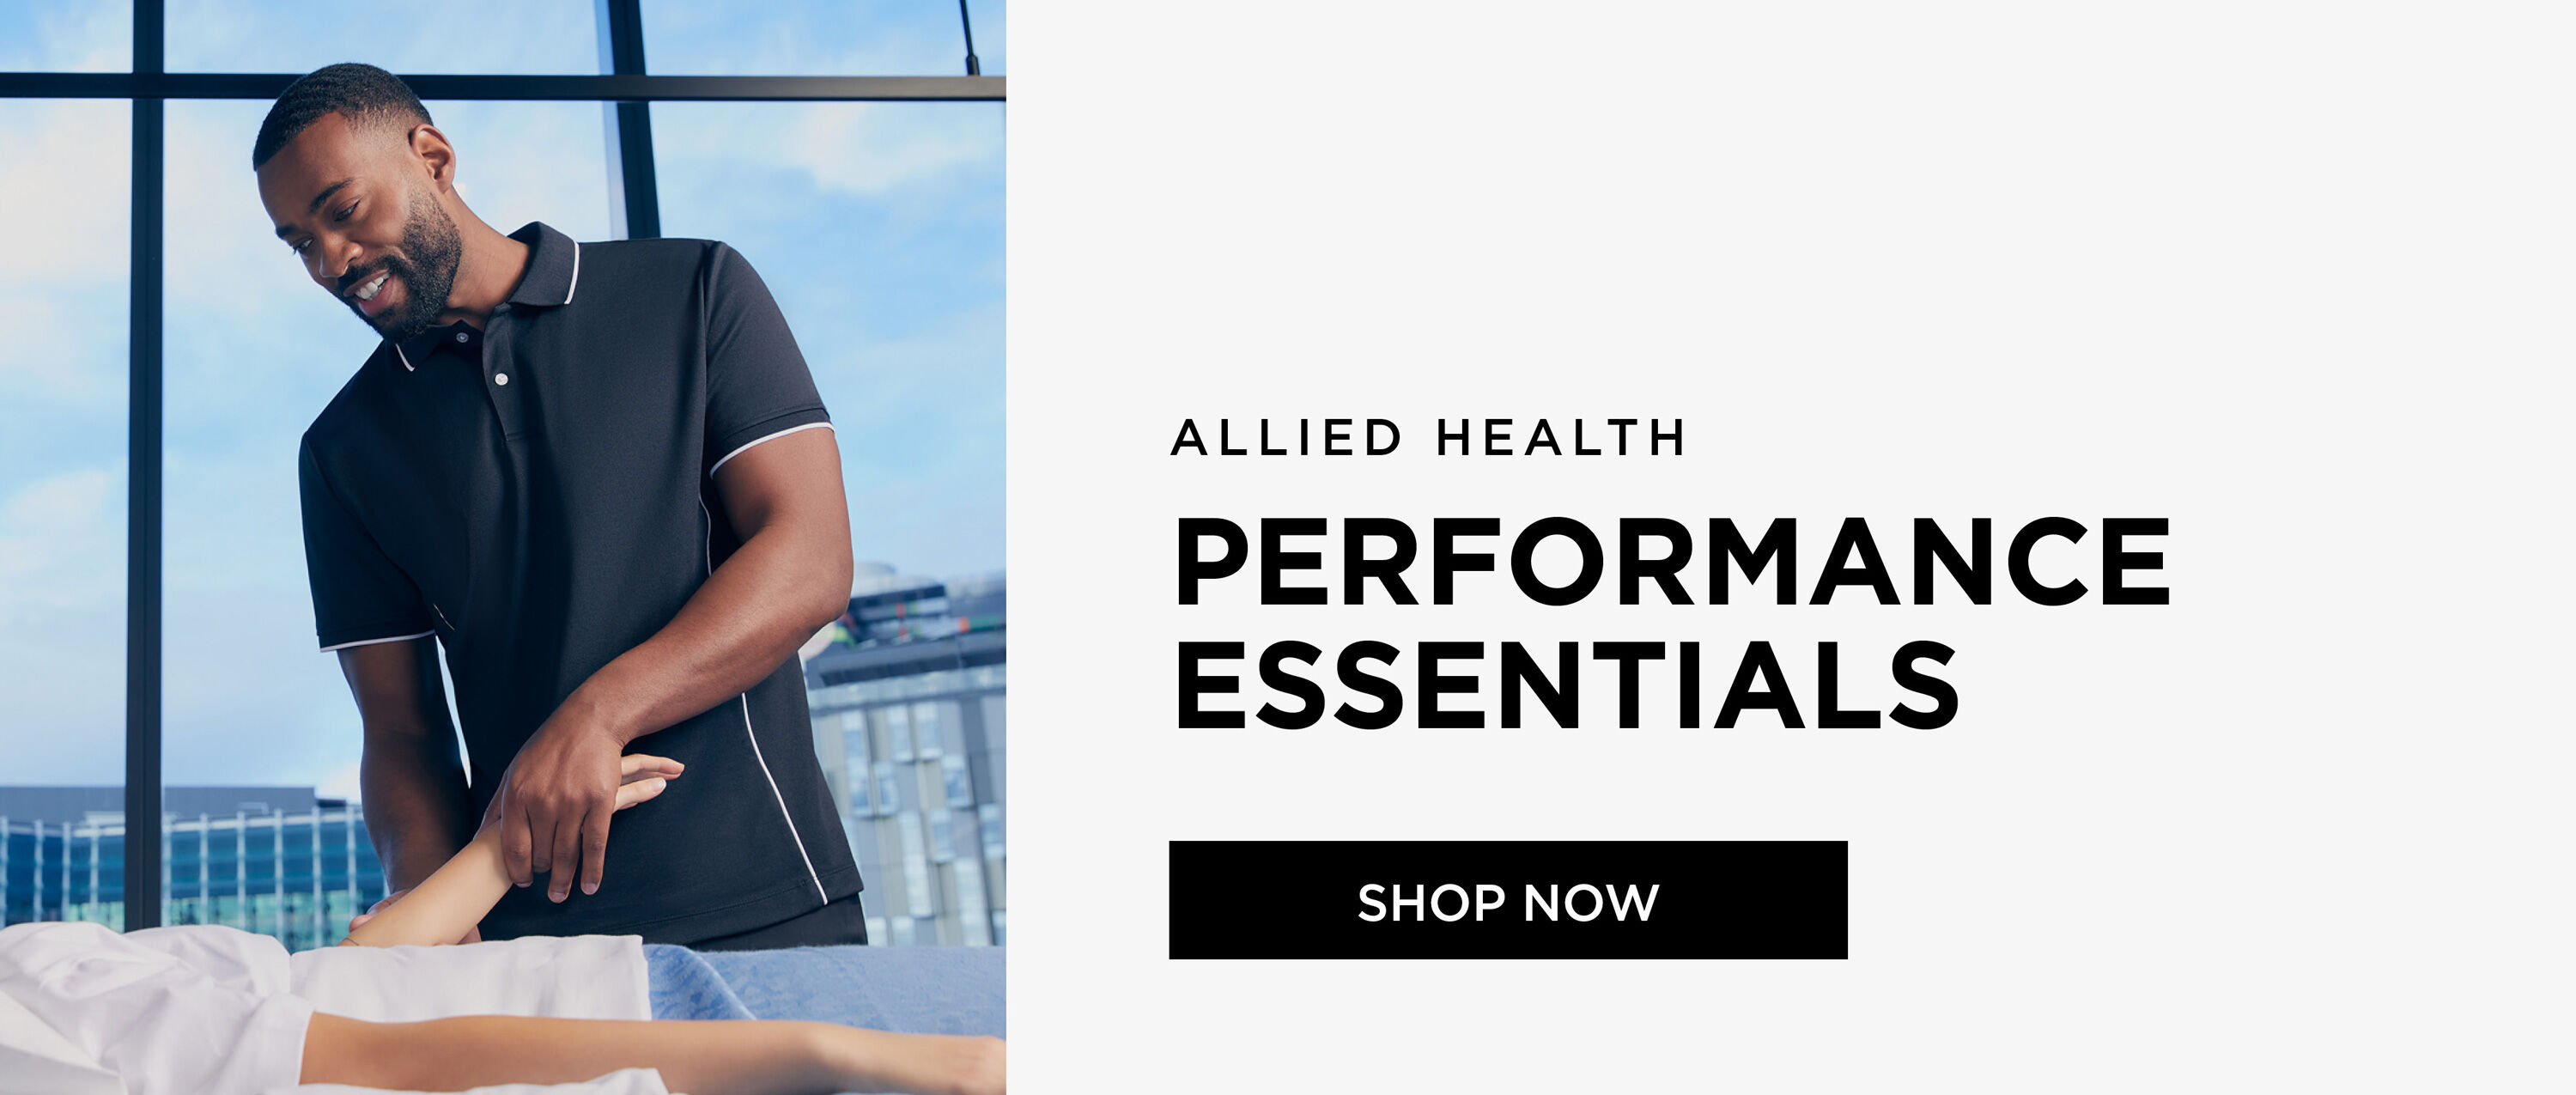 Allied Health - Performance Essentials